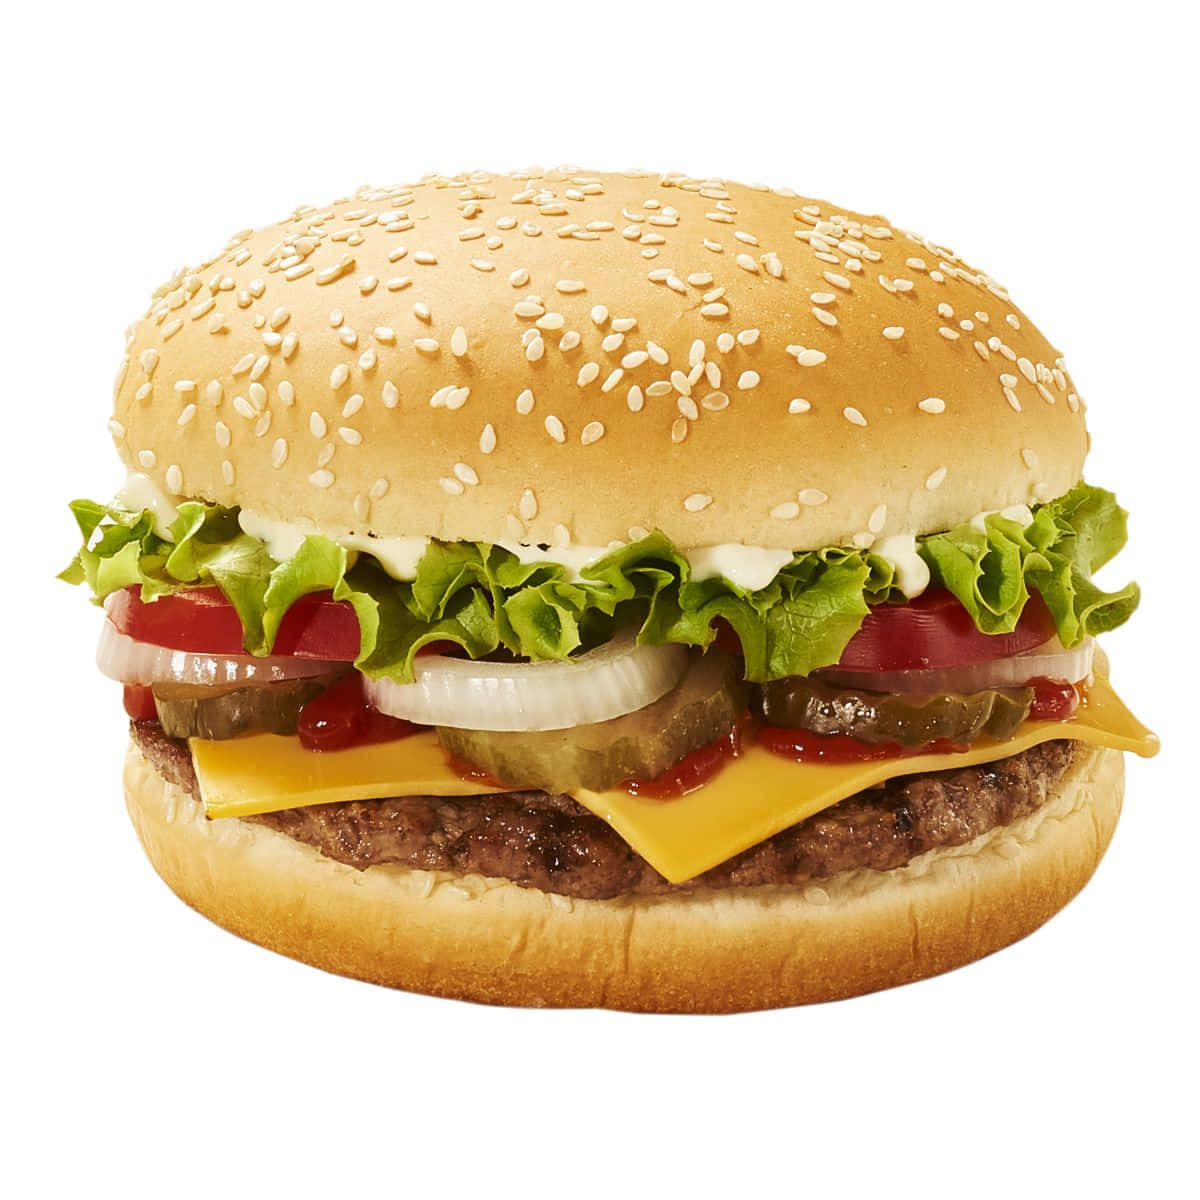 Dêa Si Mesmo Uma Deliciosa Refeição Do Burger King.